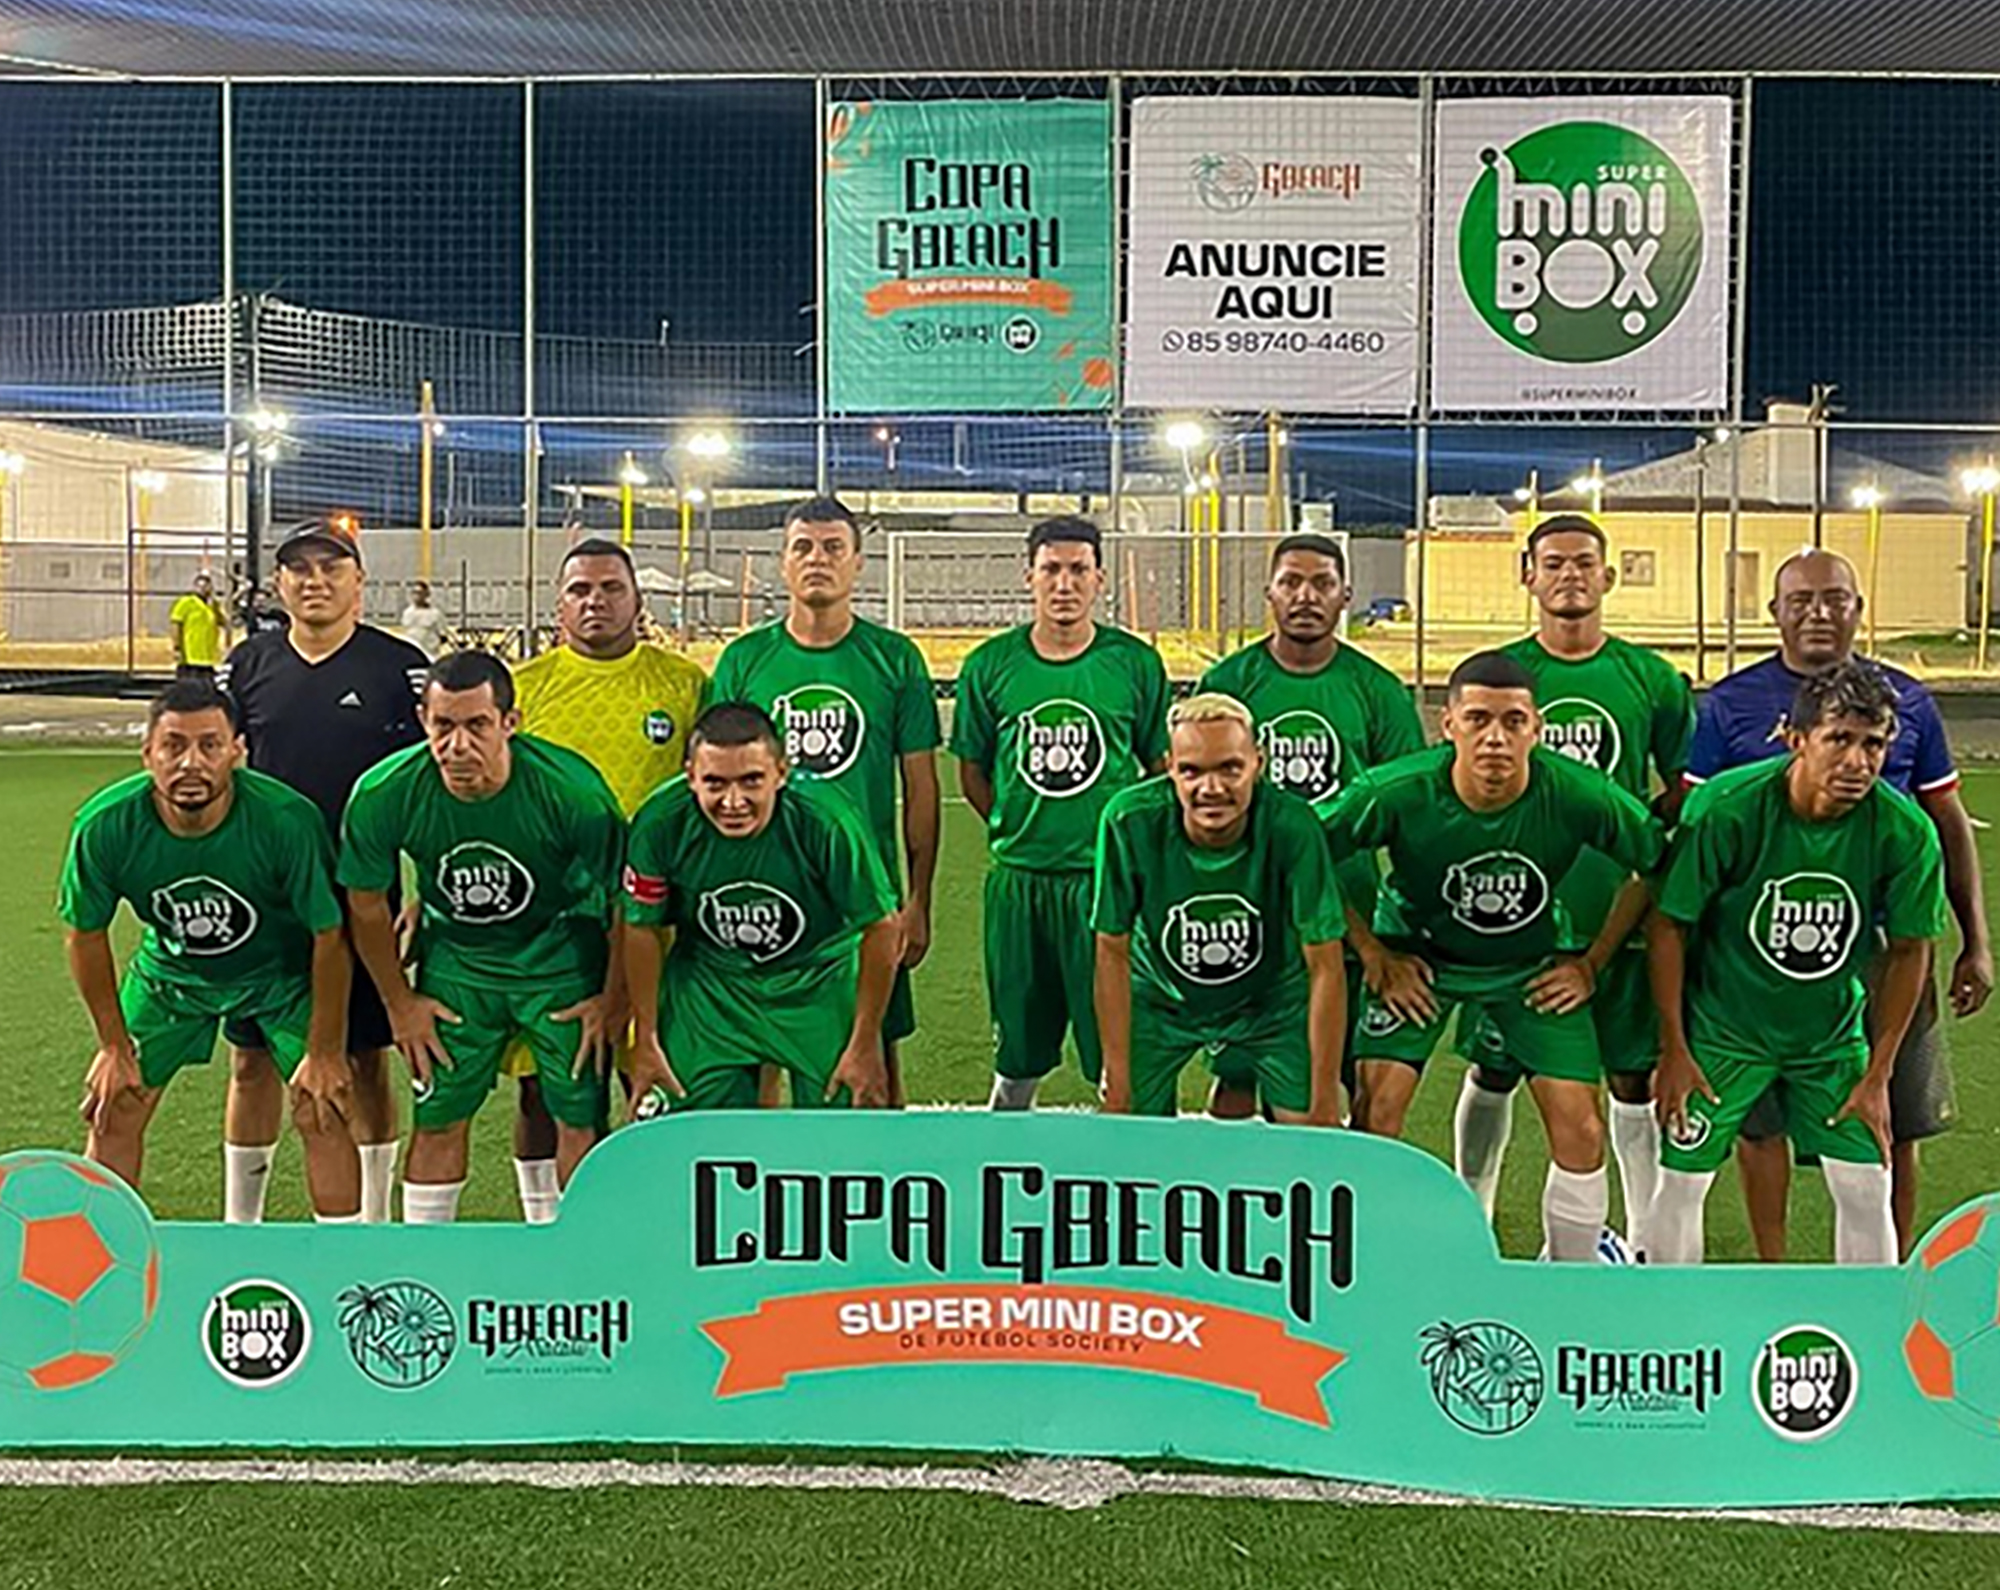 Reforçando apoio ao esporte, Grupo Super MiniBox promove campeonato aberto  de futebol em parceria com a GBeach